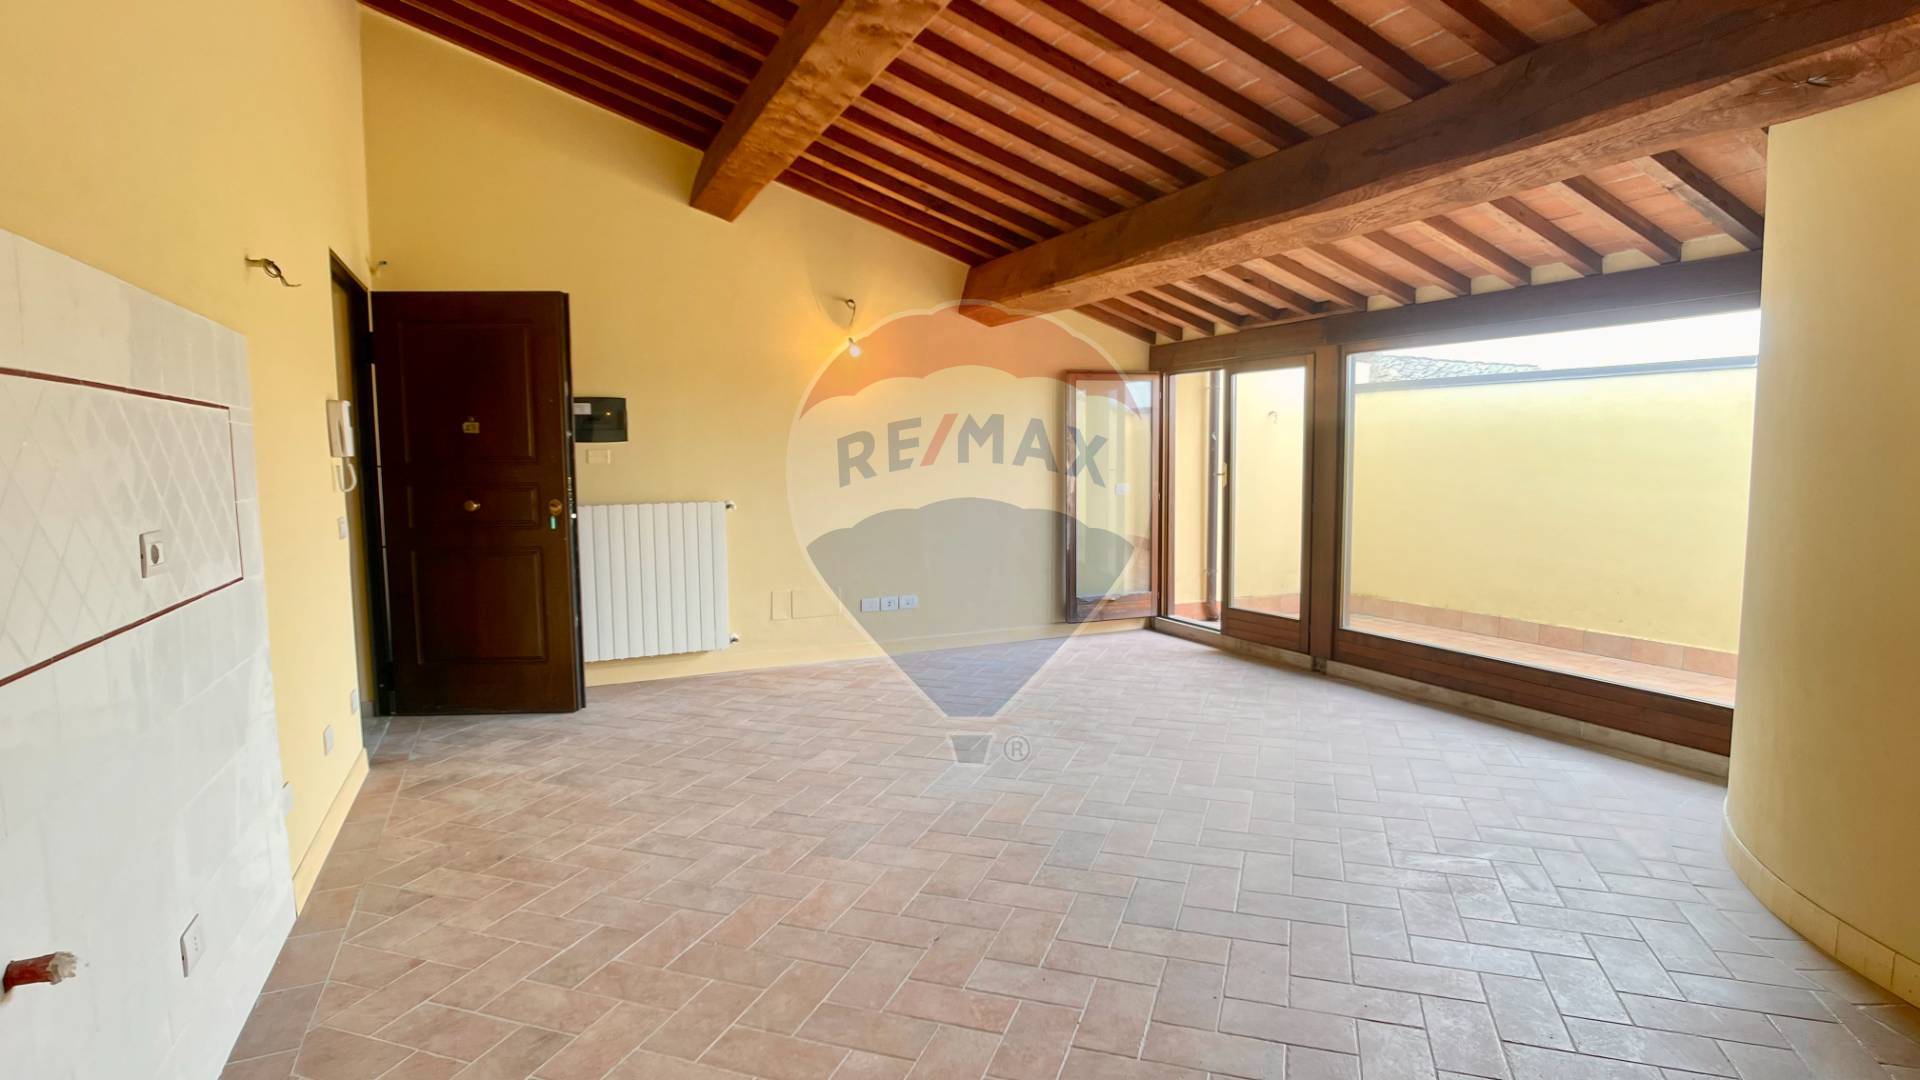 Appartamento in vendita a Casciana Terme Lari, 2 locali, zona Località: CascianaAlta, prezzo € 140.000 | PortaleAgenzieImmobiliari.it